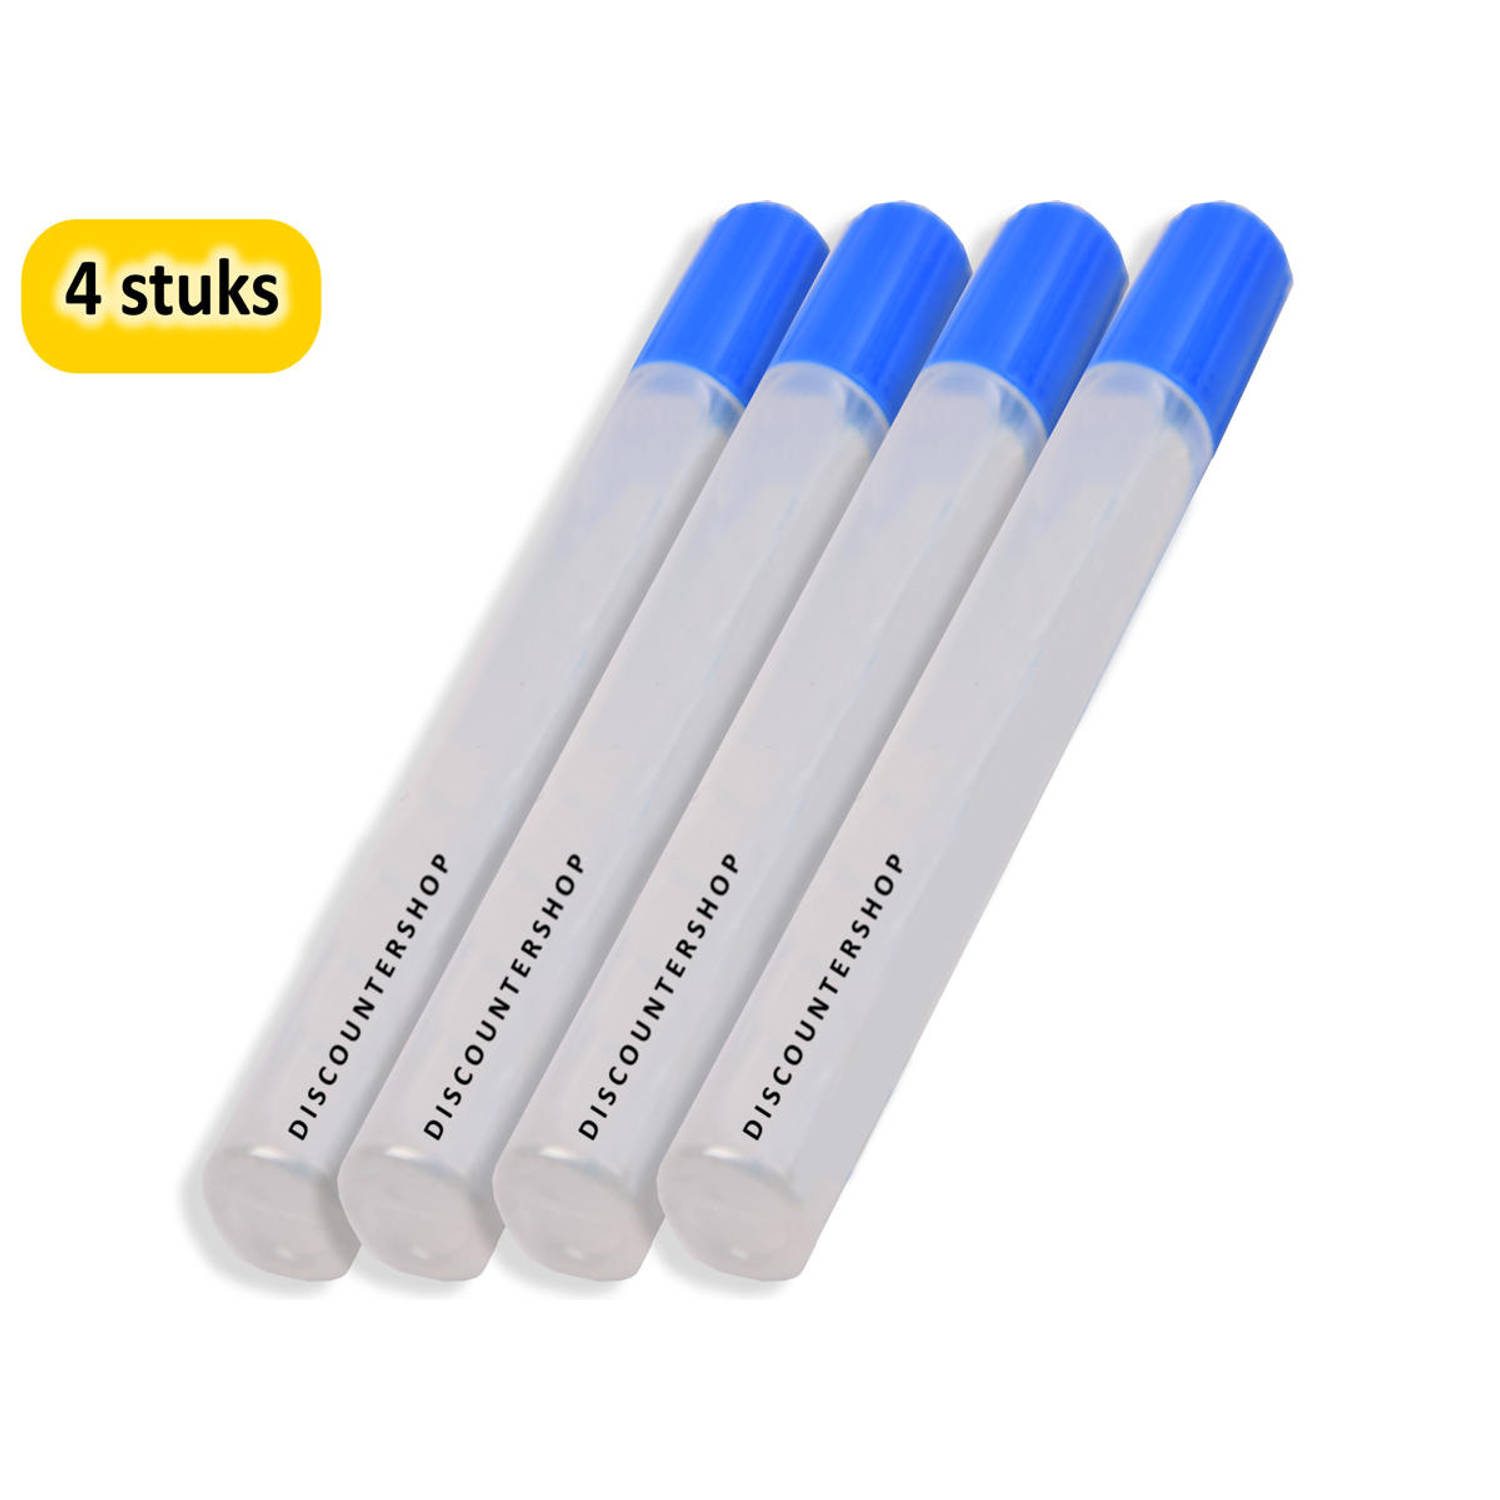 Hobbylijm Glue Pen 50 Gram - 4 Stuks Verpakking - Voor Precisiewerk en Handige Lijmtoepassingen